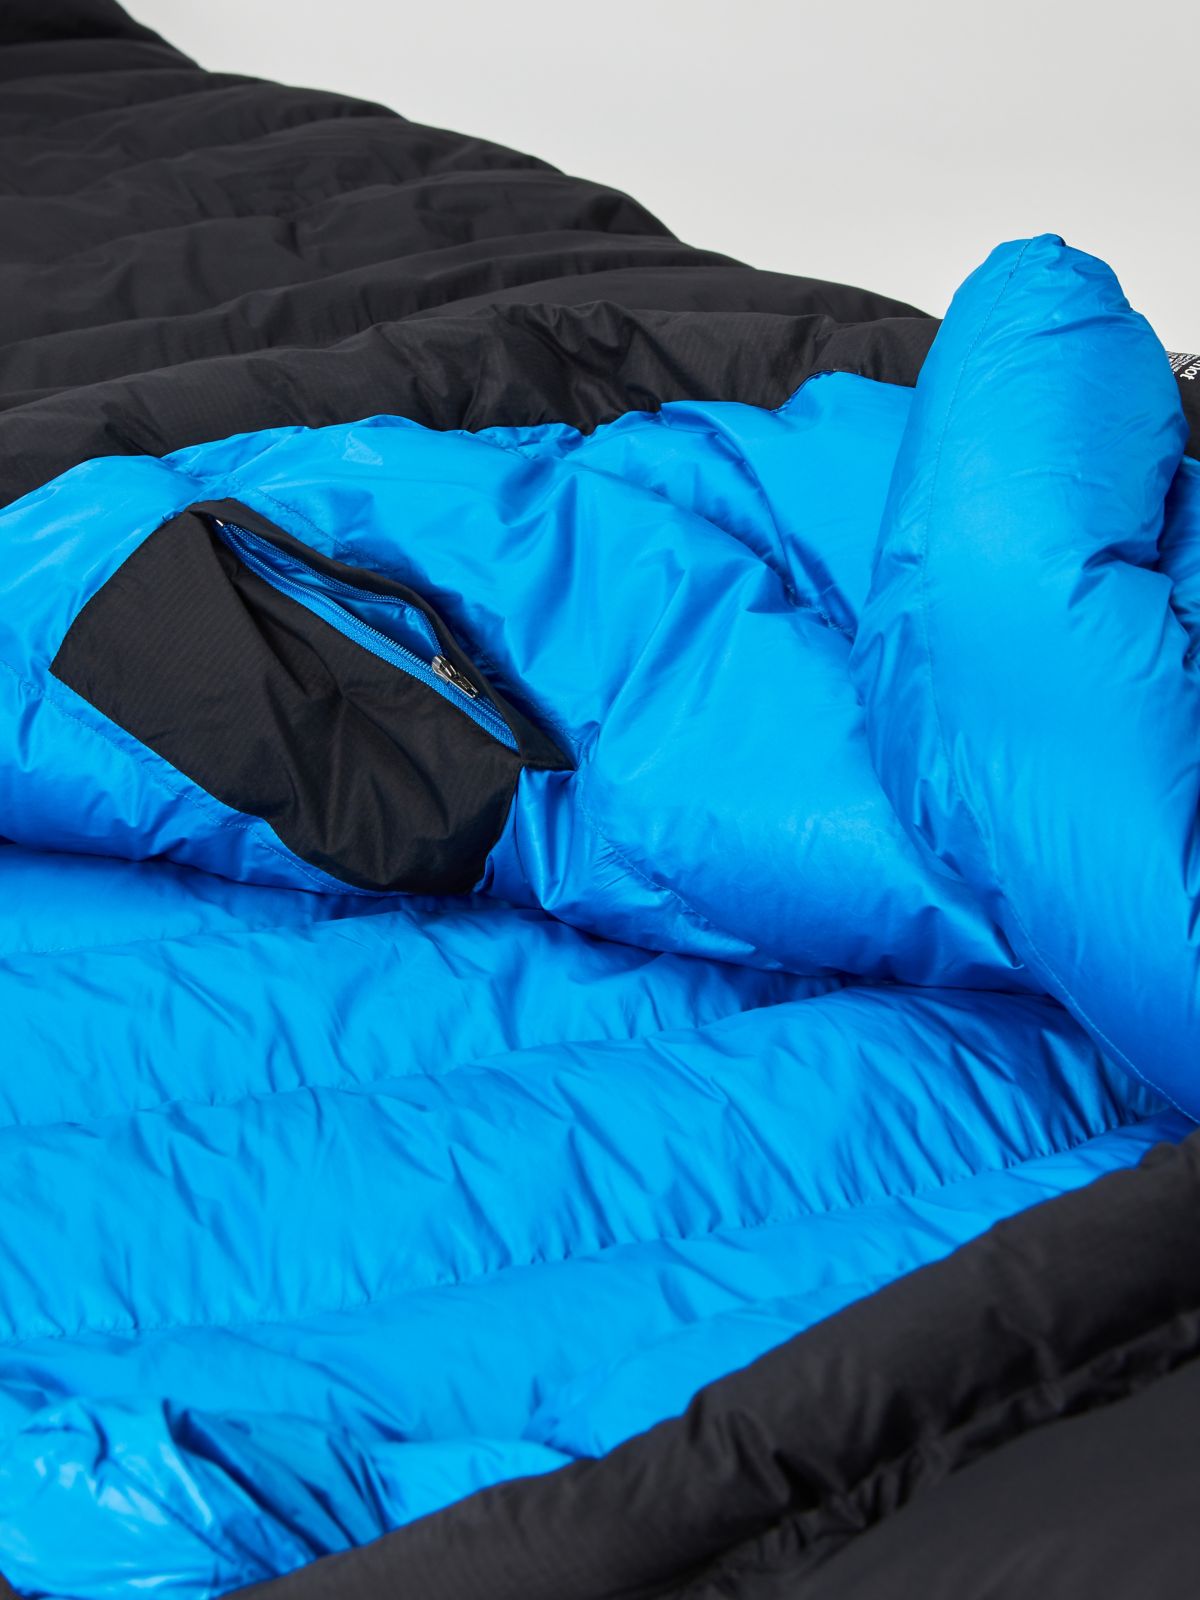 paiju 10 degrees sleeping bag  long